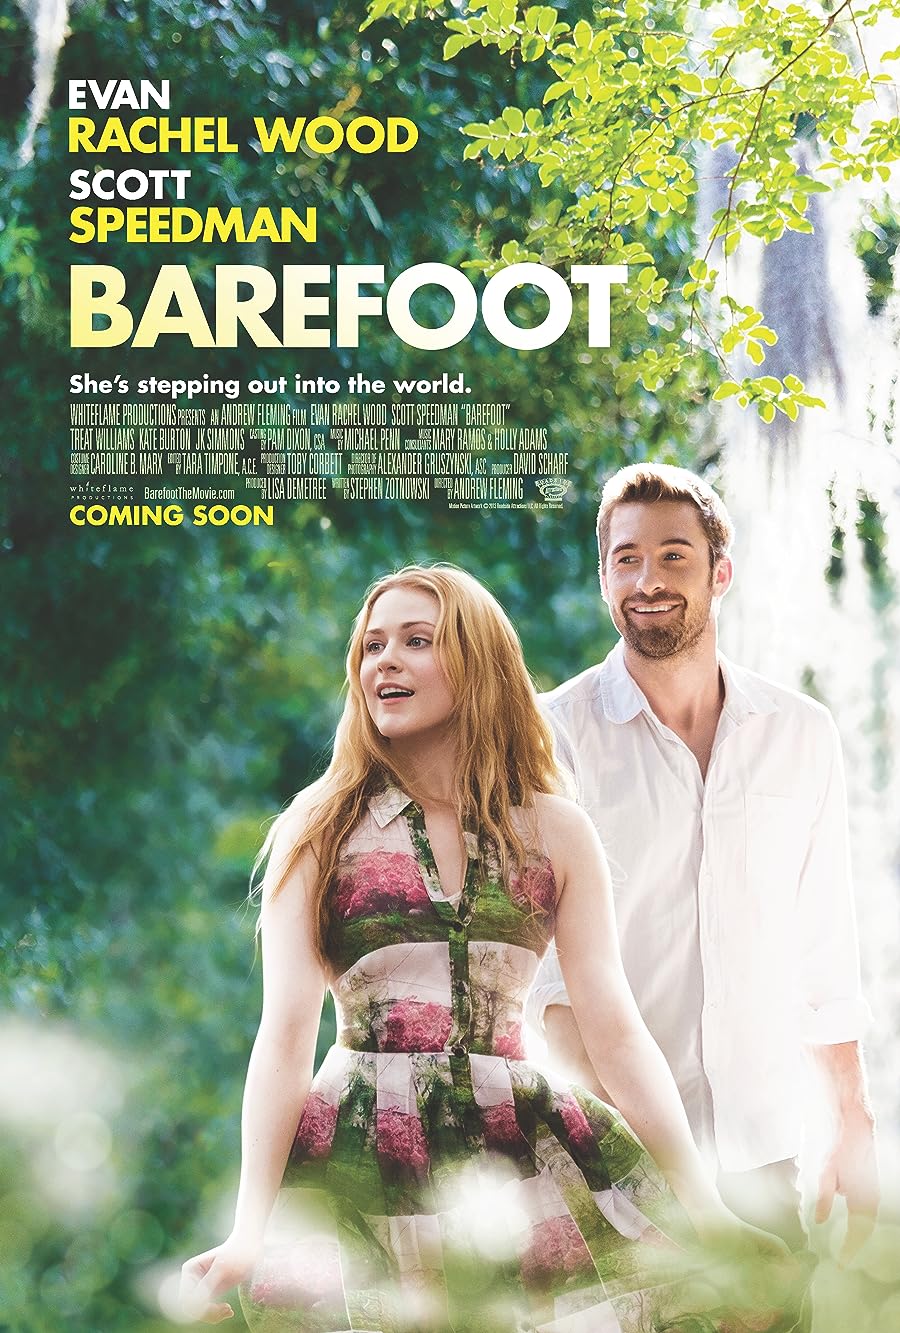 دانلود فیلم Barefoot 2014